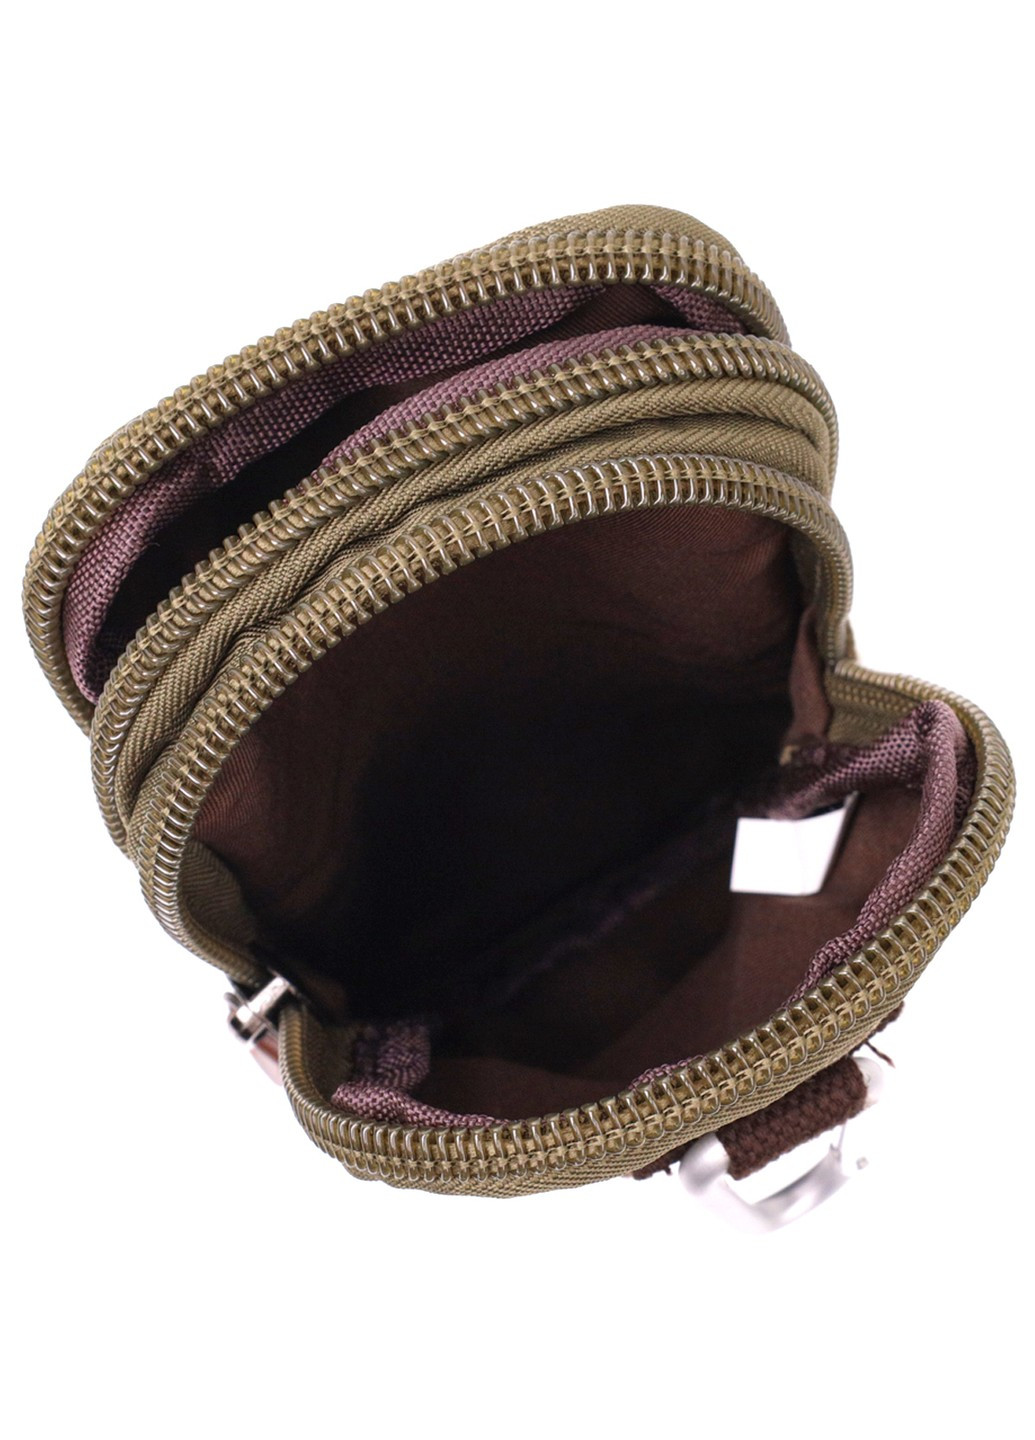 Компактная сумка-чехол на пояс с металлическим карабином из текстиля 22224 Оливковый Vintage (267932172)